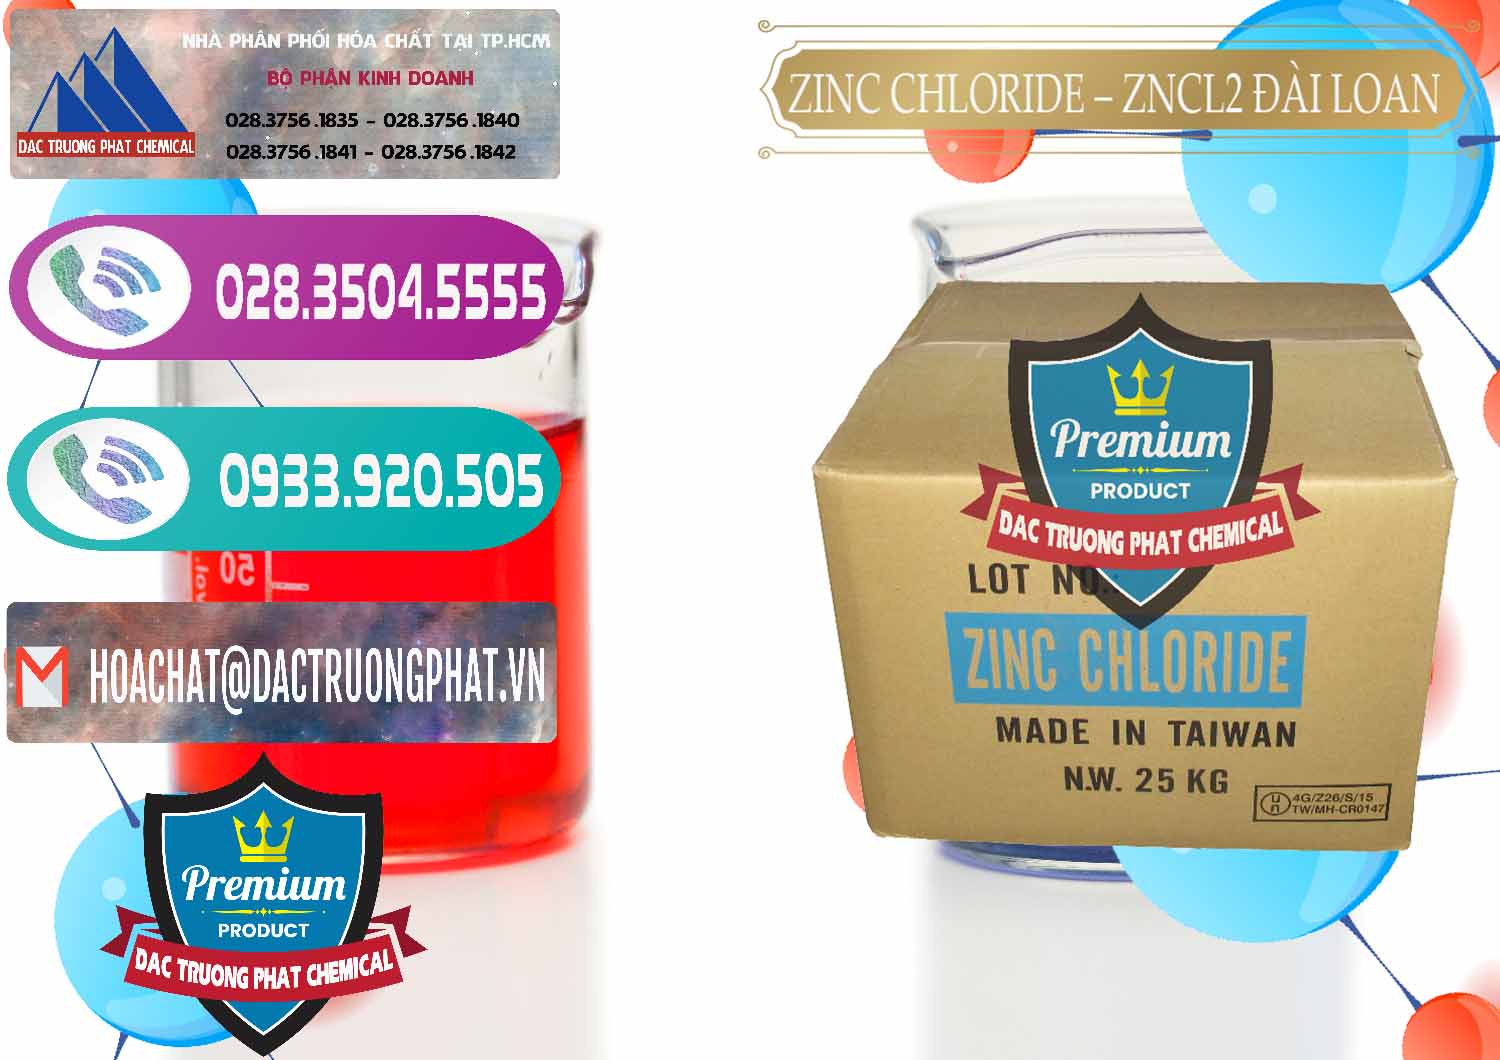 Cty bán ( cung cấp ) Zinc Chloride - ZNCL2 96% Đài Loan Taiwan - 0178 - Công ty chuyên cung cấp - kinh doanh hóa chất tại TP.HCM - hoachatxulynuoc.com